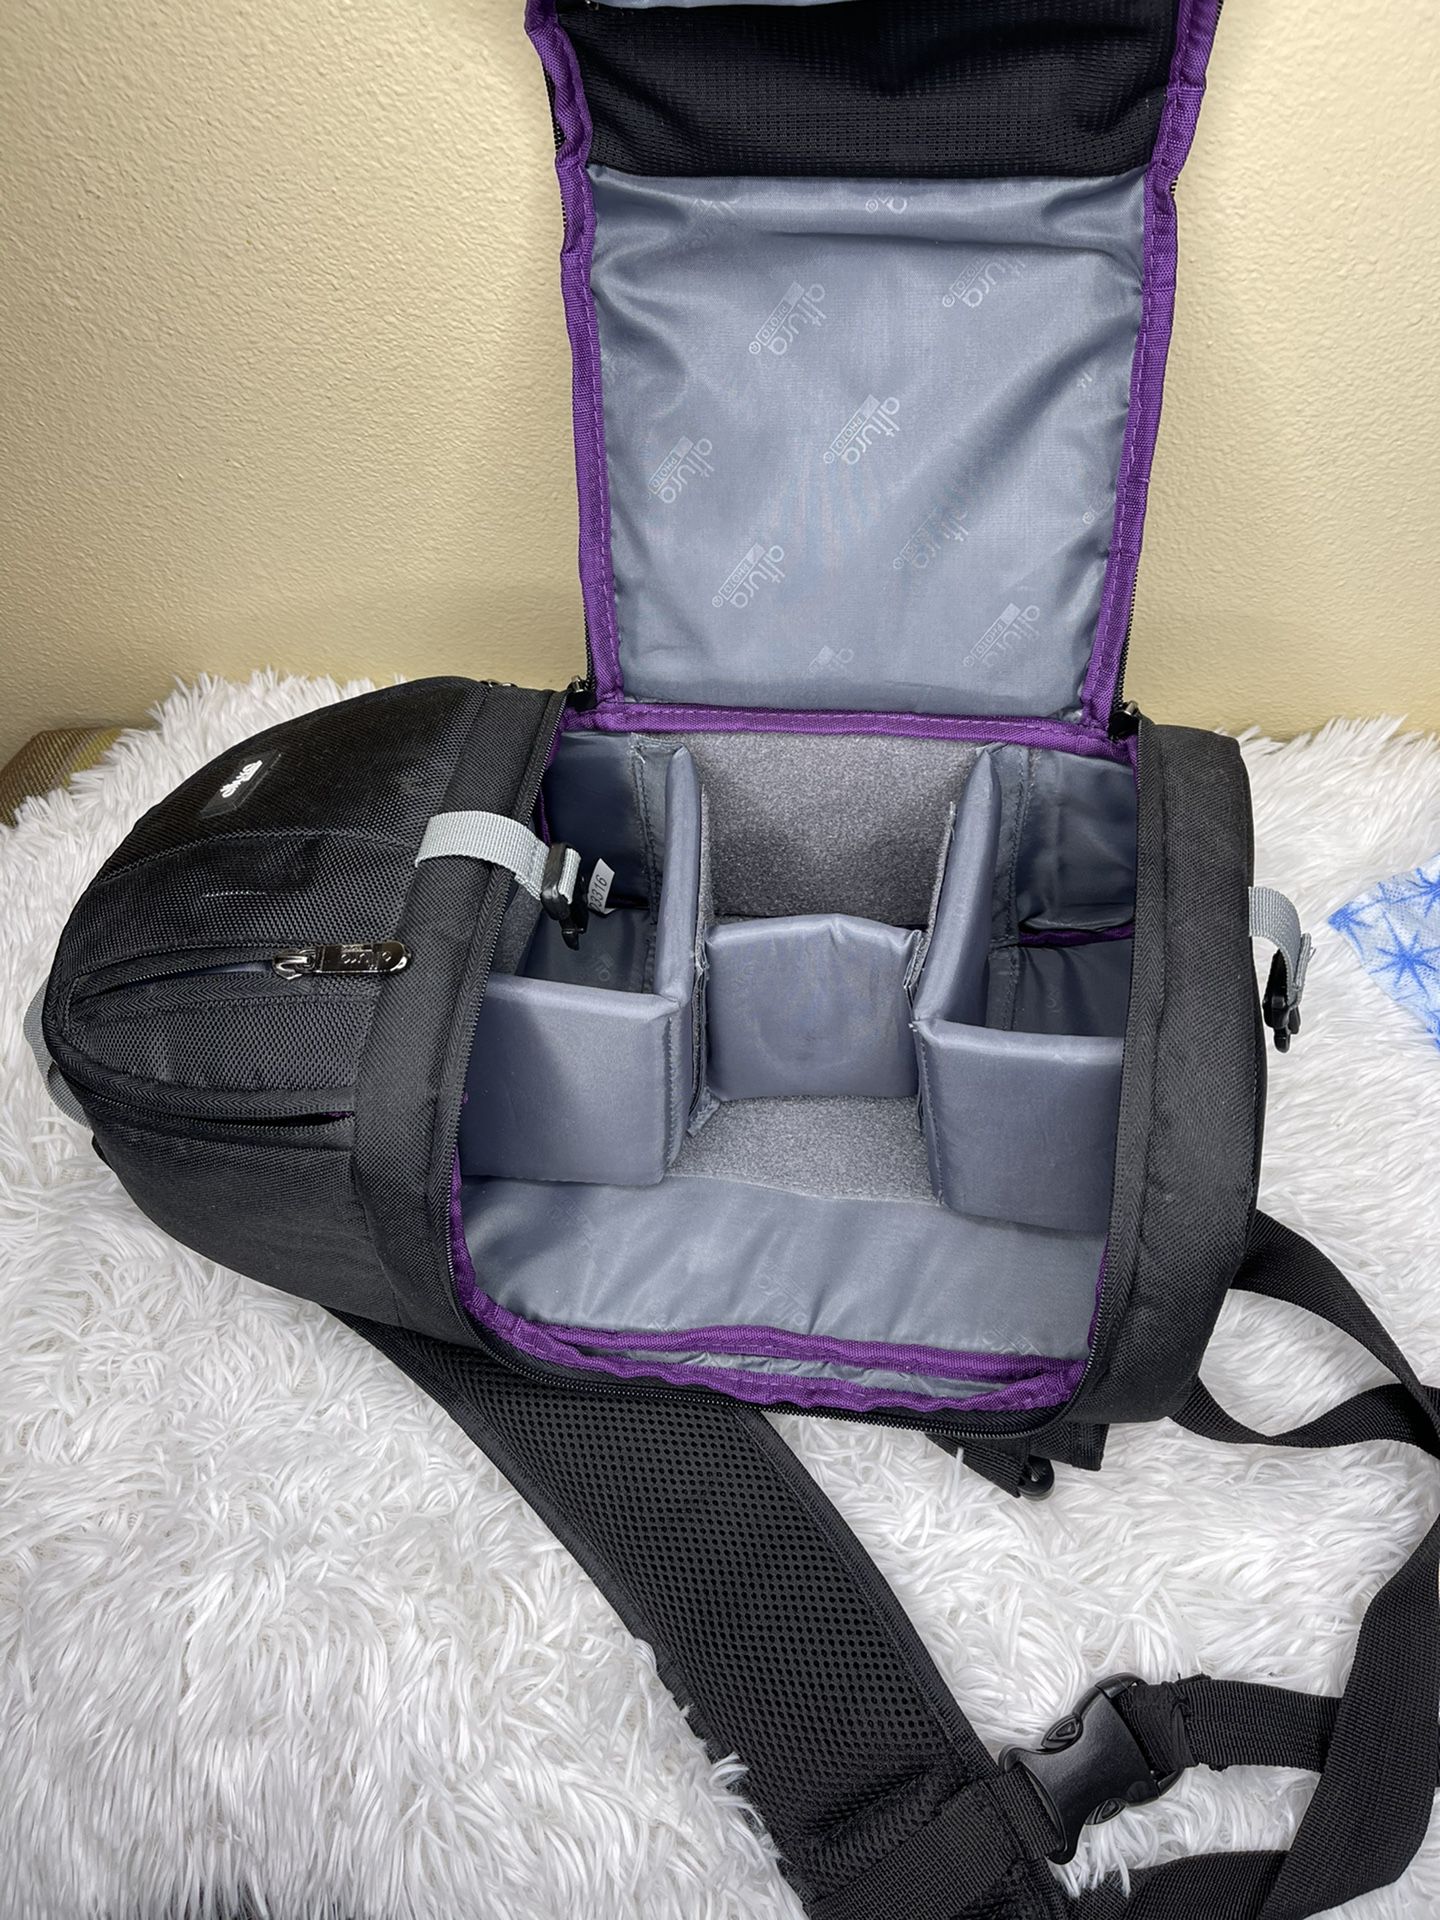 Camara Backpack bag for DSRL and mirrosless.